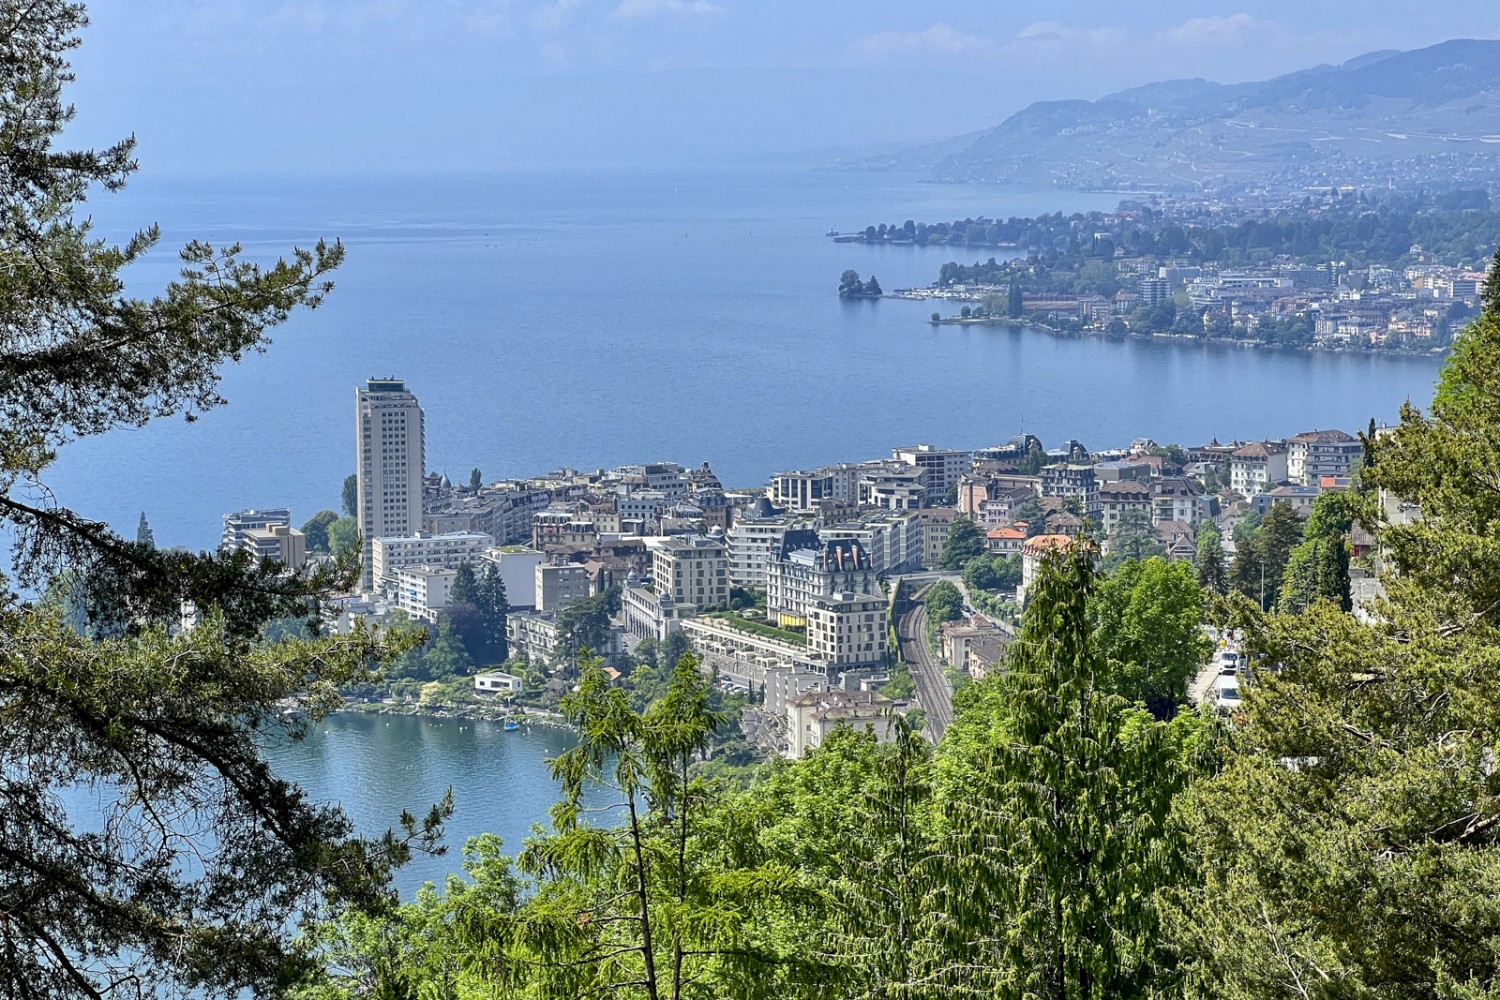 Diese Wanderung bietet eine angenehme Mischung von üppiger Natur und schönen Ausblicken auf den Genfersee und dessen Uferanlagen, wie hier in Montreux. Bild: Pascal Bourquin